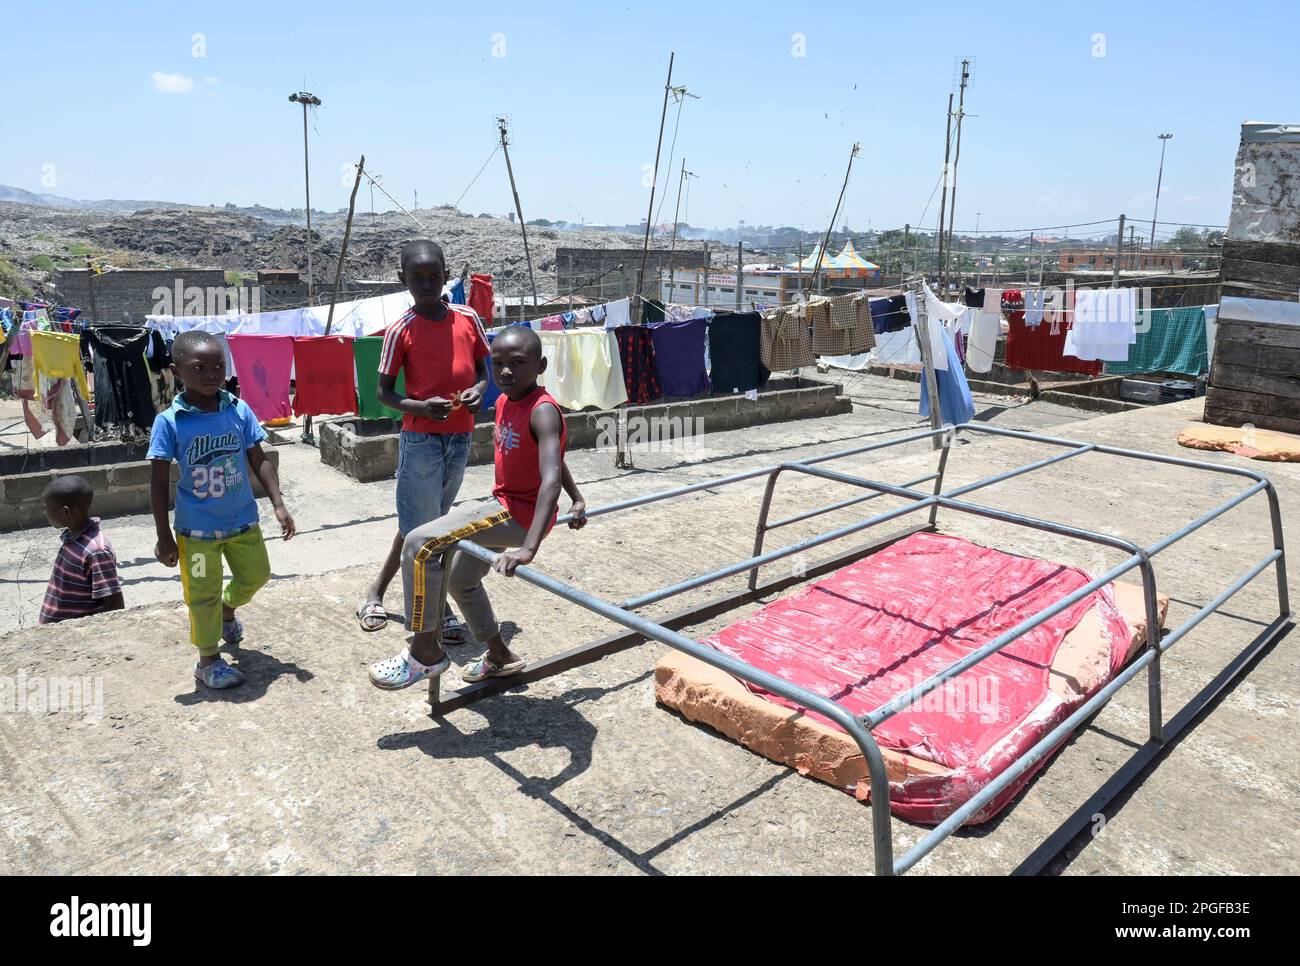 KENIA, Nairobi, Korogocho Slum, Häuser in der Nähe der Abfalldeponie Dandora, Wäschetrocknen auf dem Dach nach der Wäsche / KENIA, Nairobi, Korogocho Slum, Häuser an der Dandora Müllkippe Stockfoto